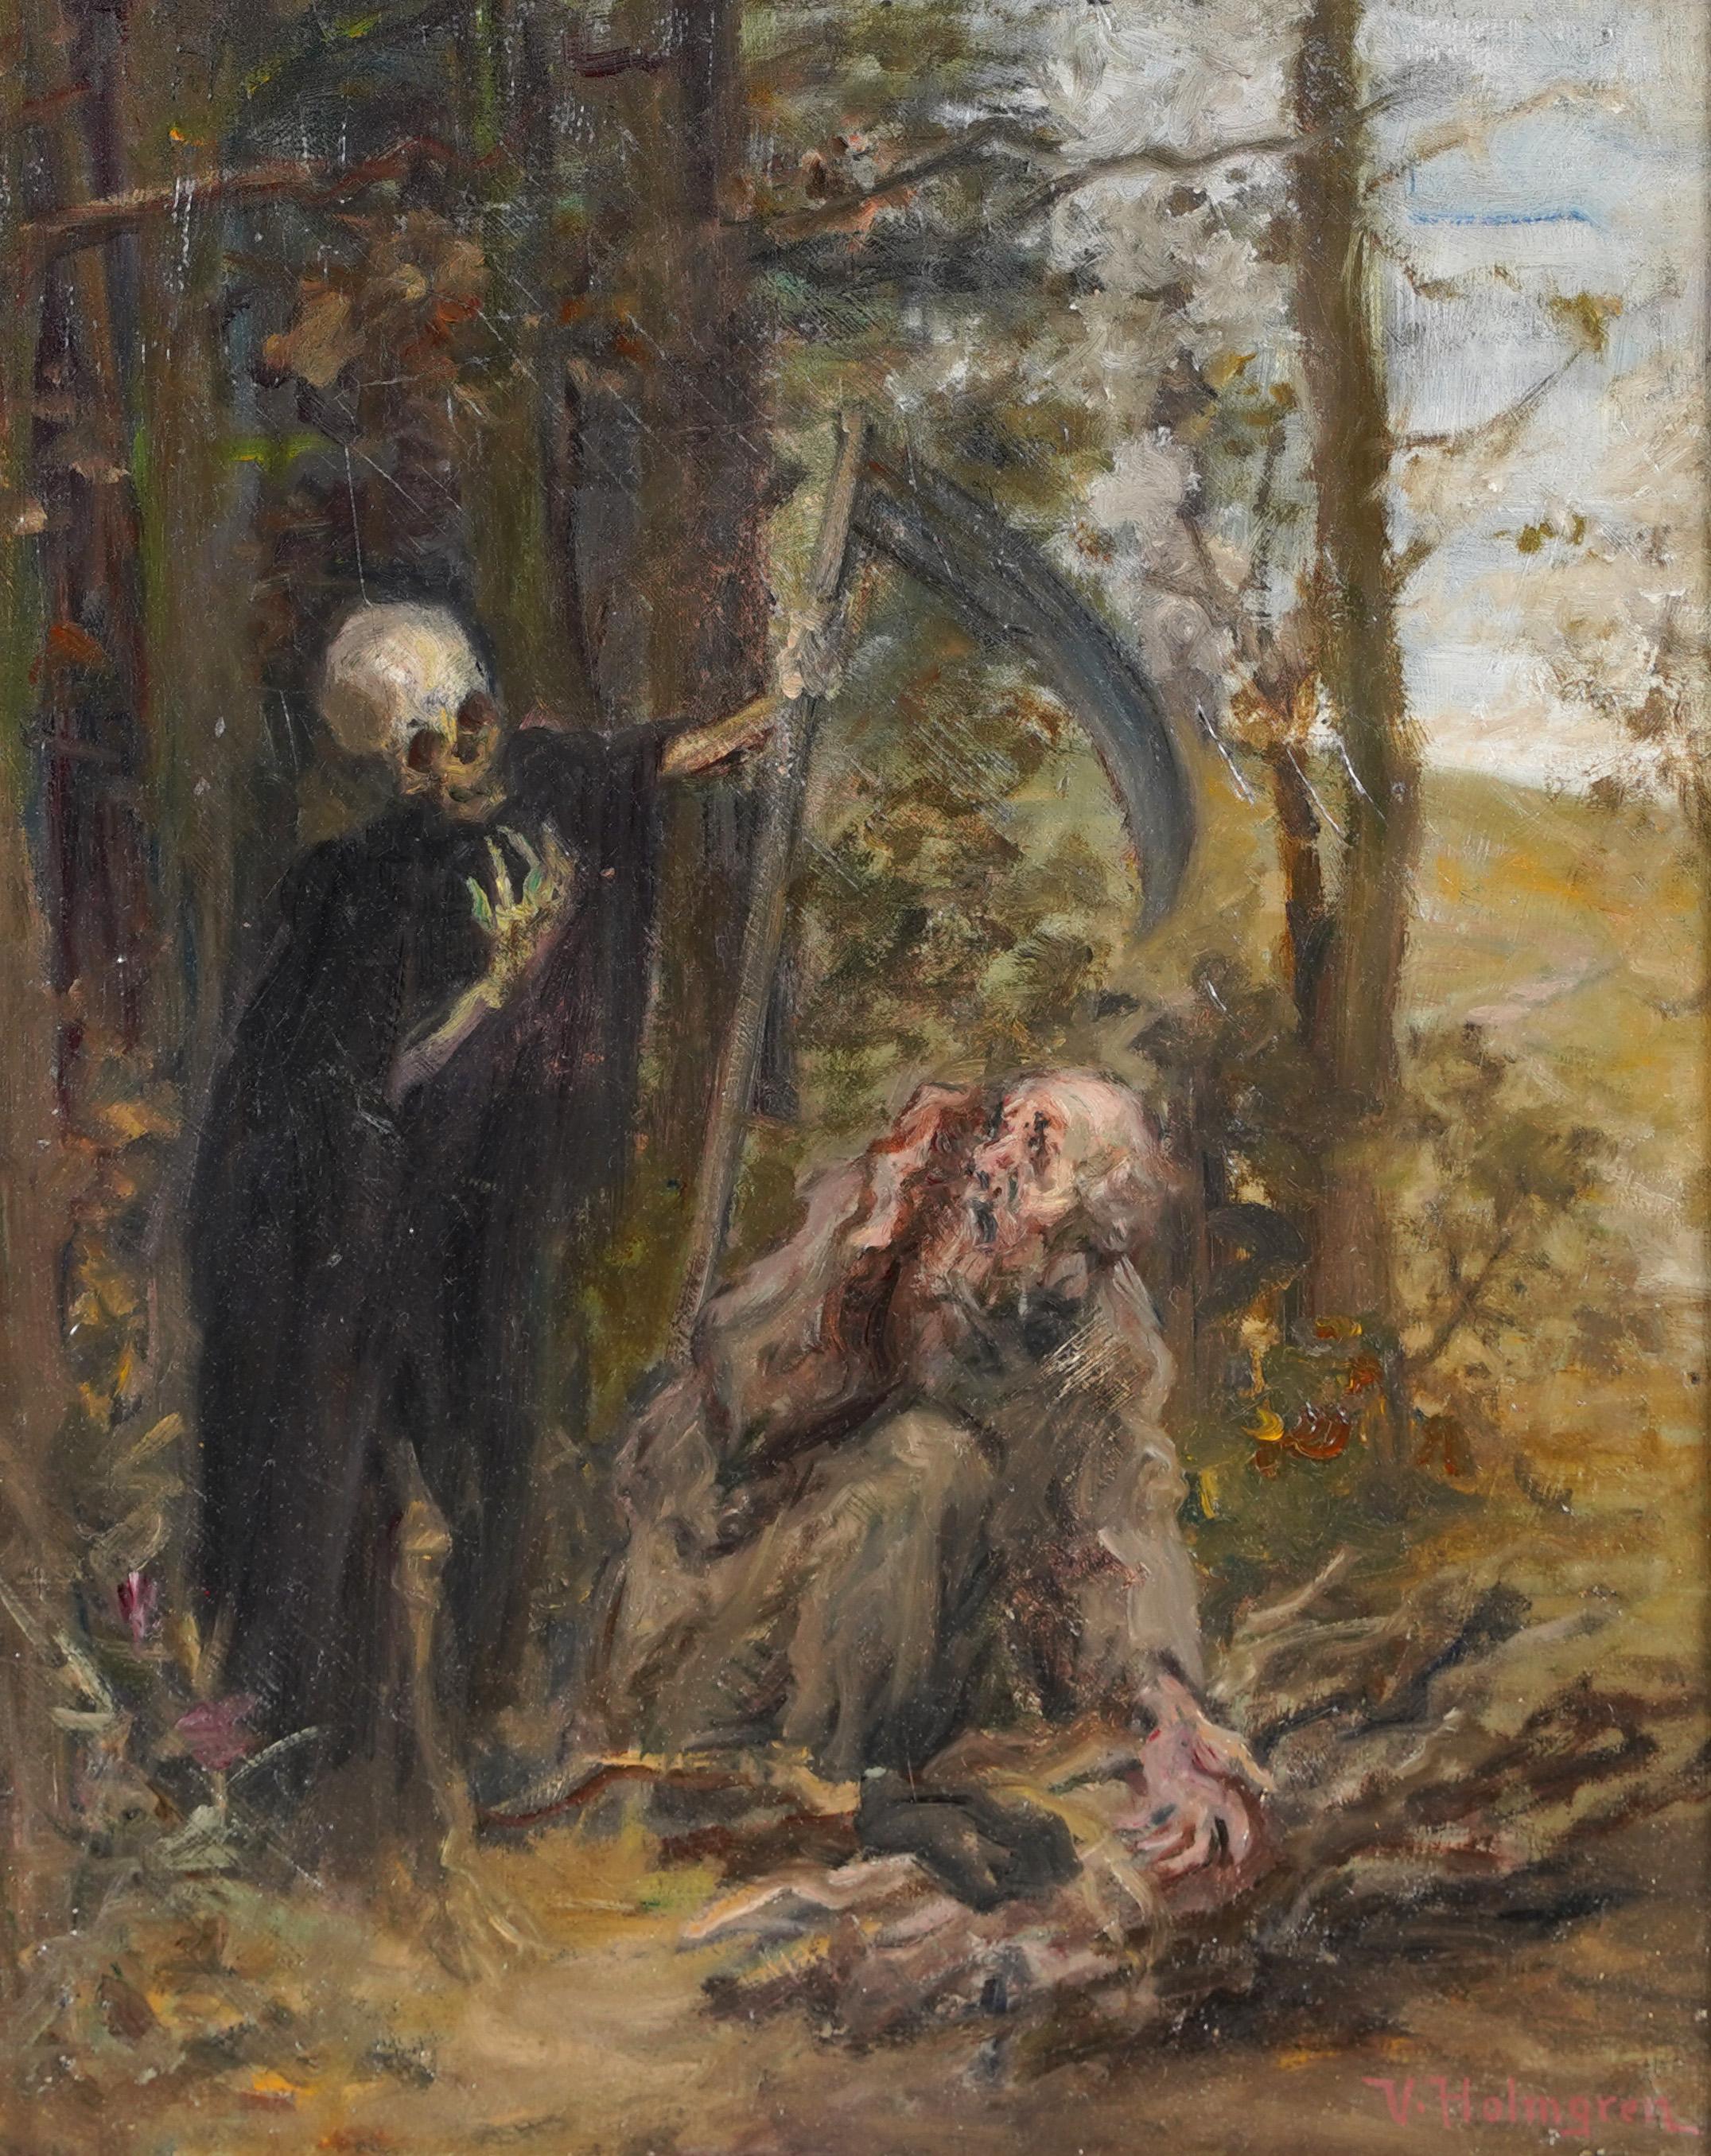 grim paintings